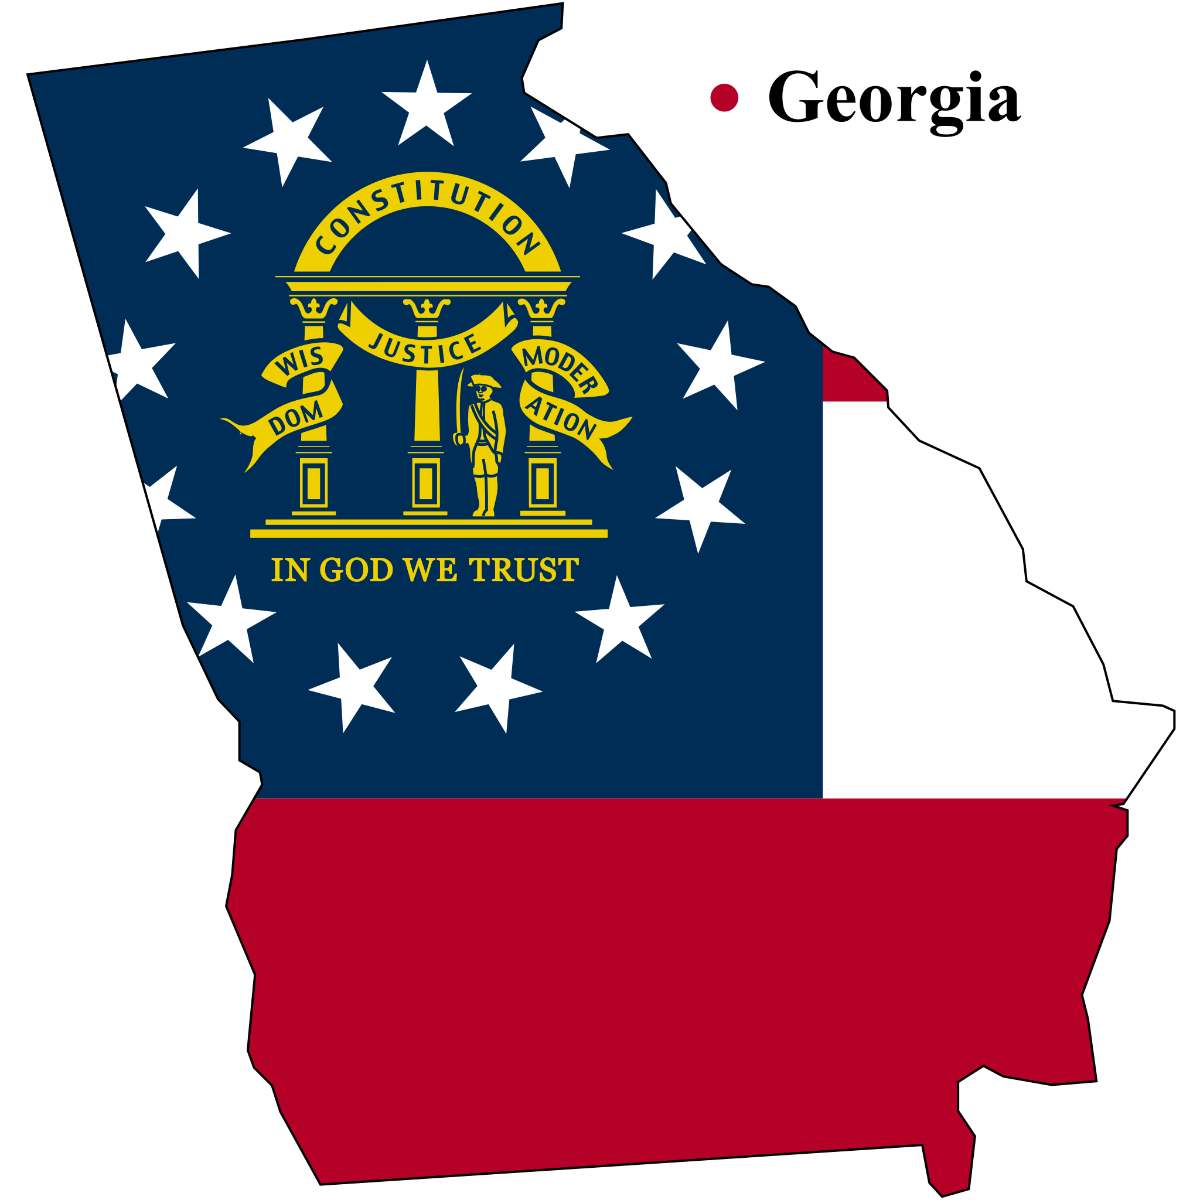 Georgia State map cutout with Georgia flag superimposed